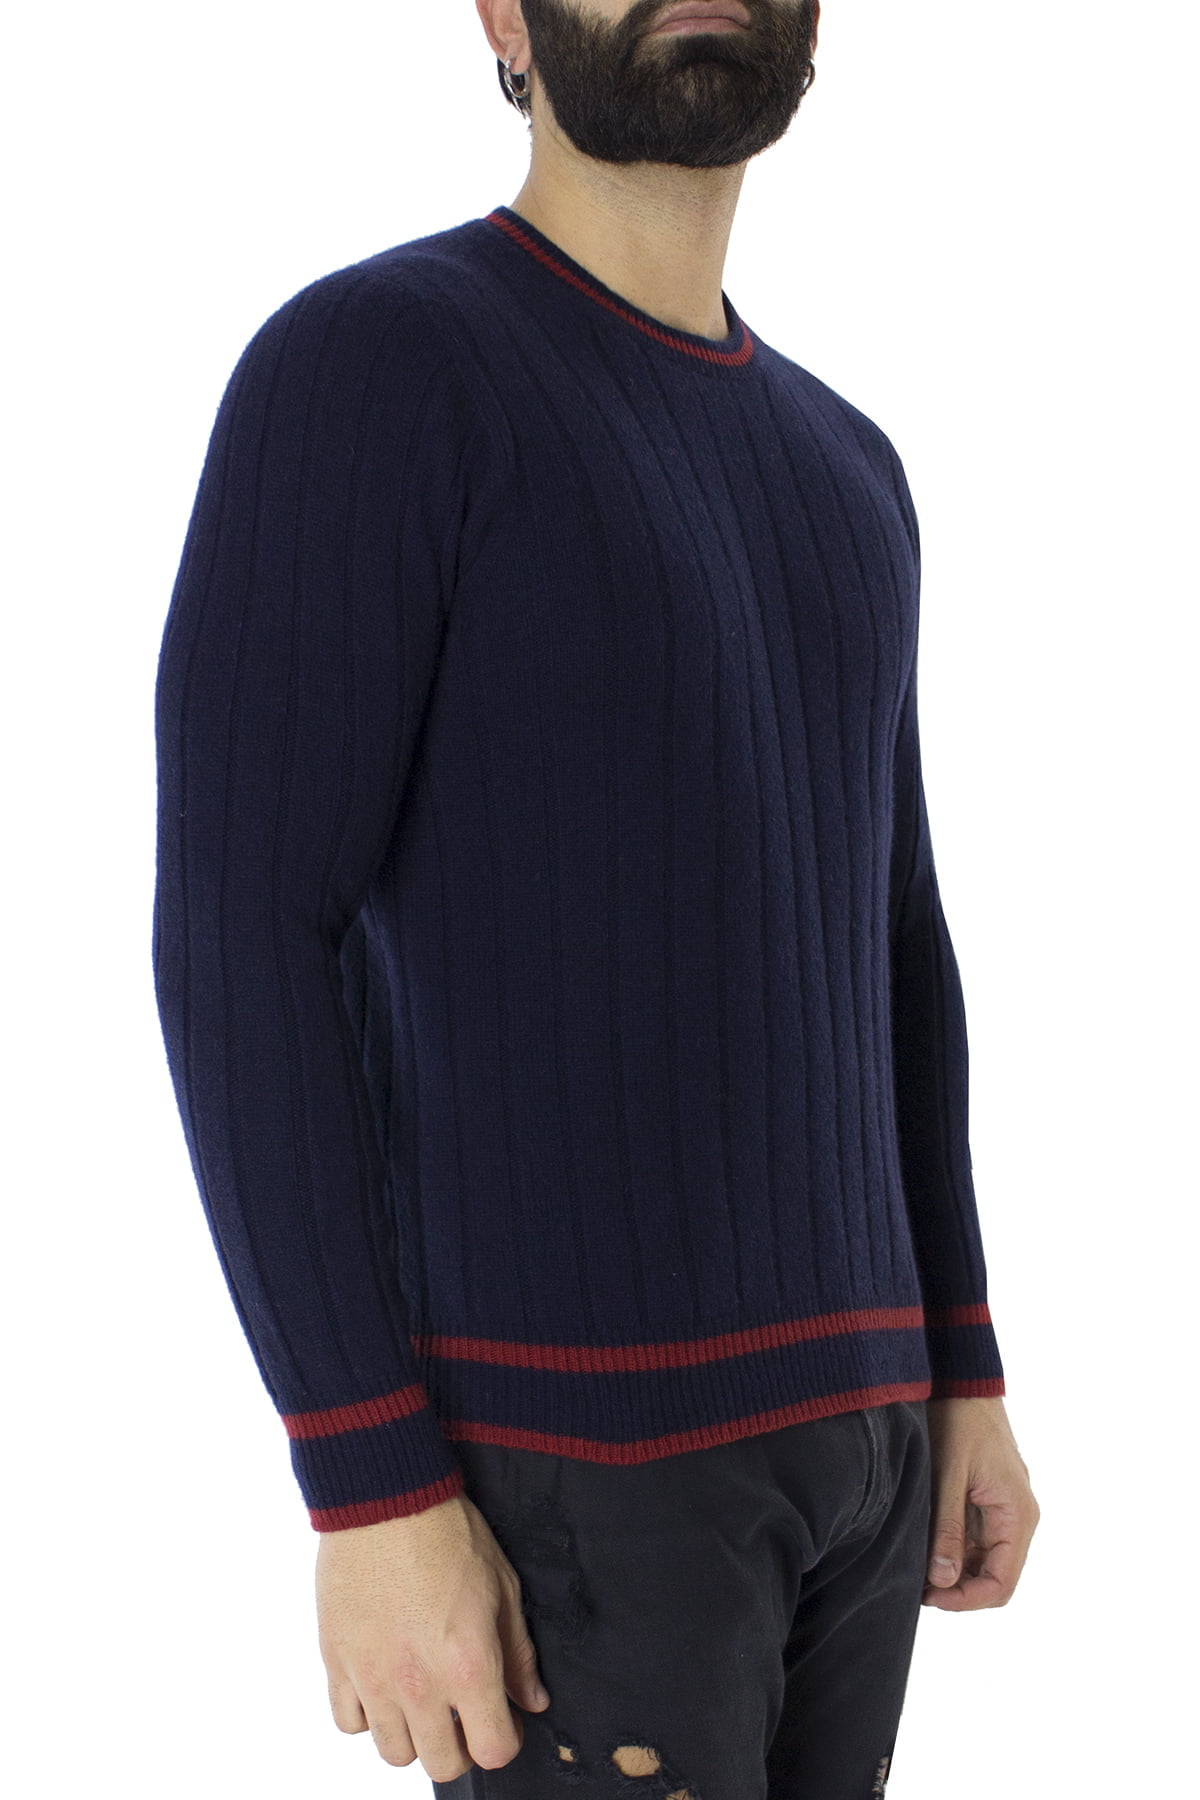 Maglione uomo Girocollo blu a coste in lana merinos con bordini rossi slim fit made in italy